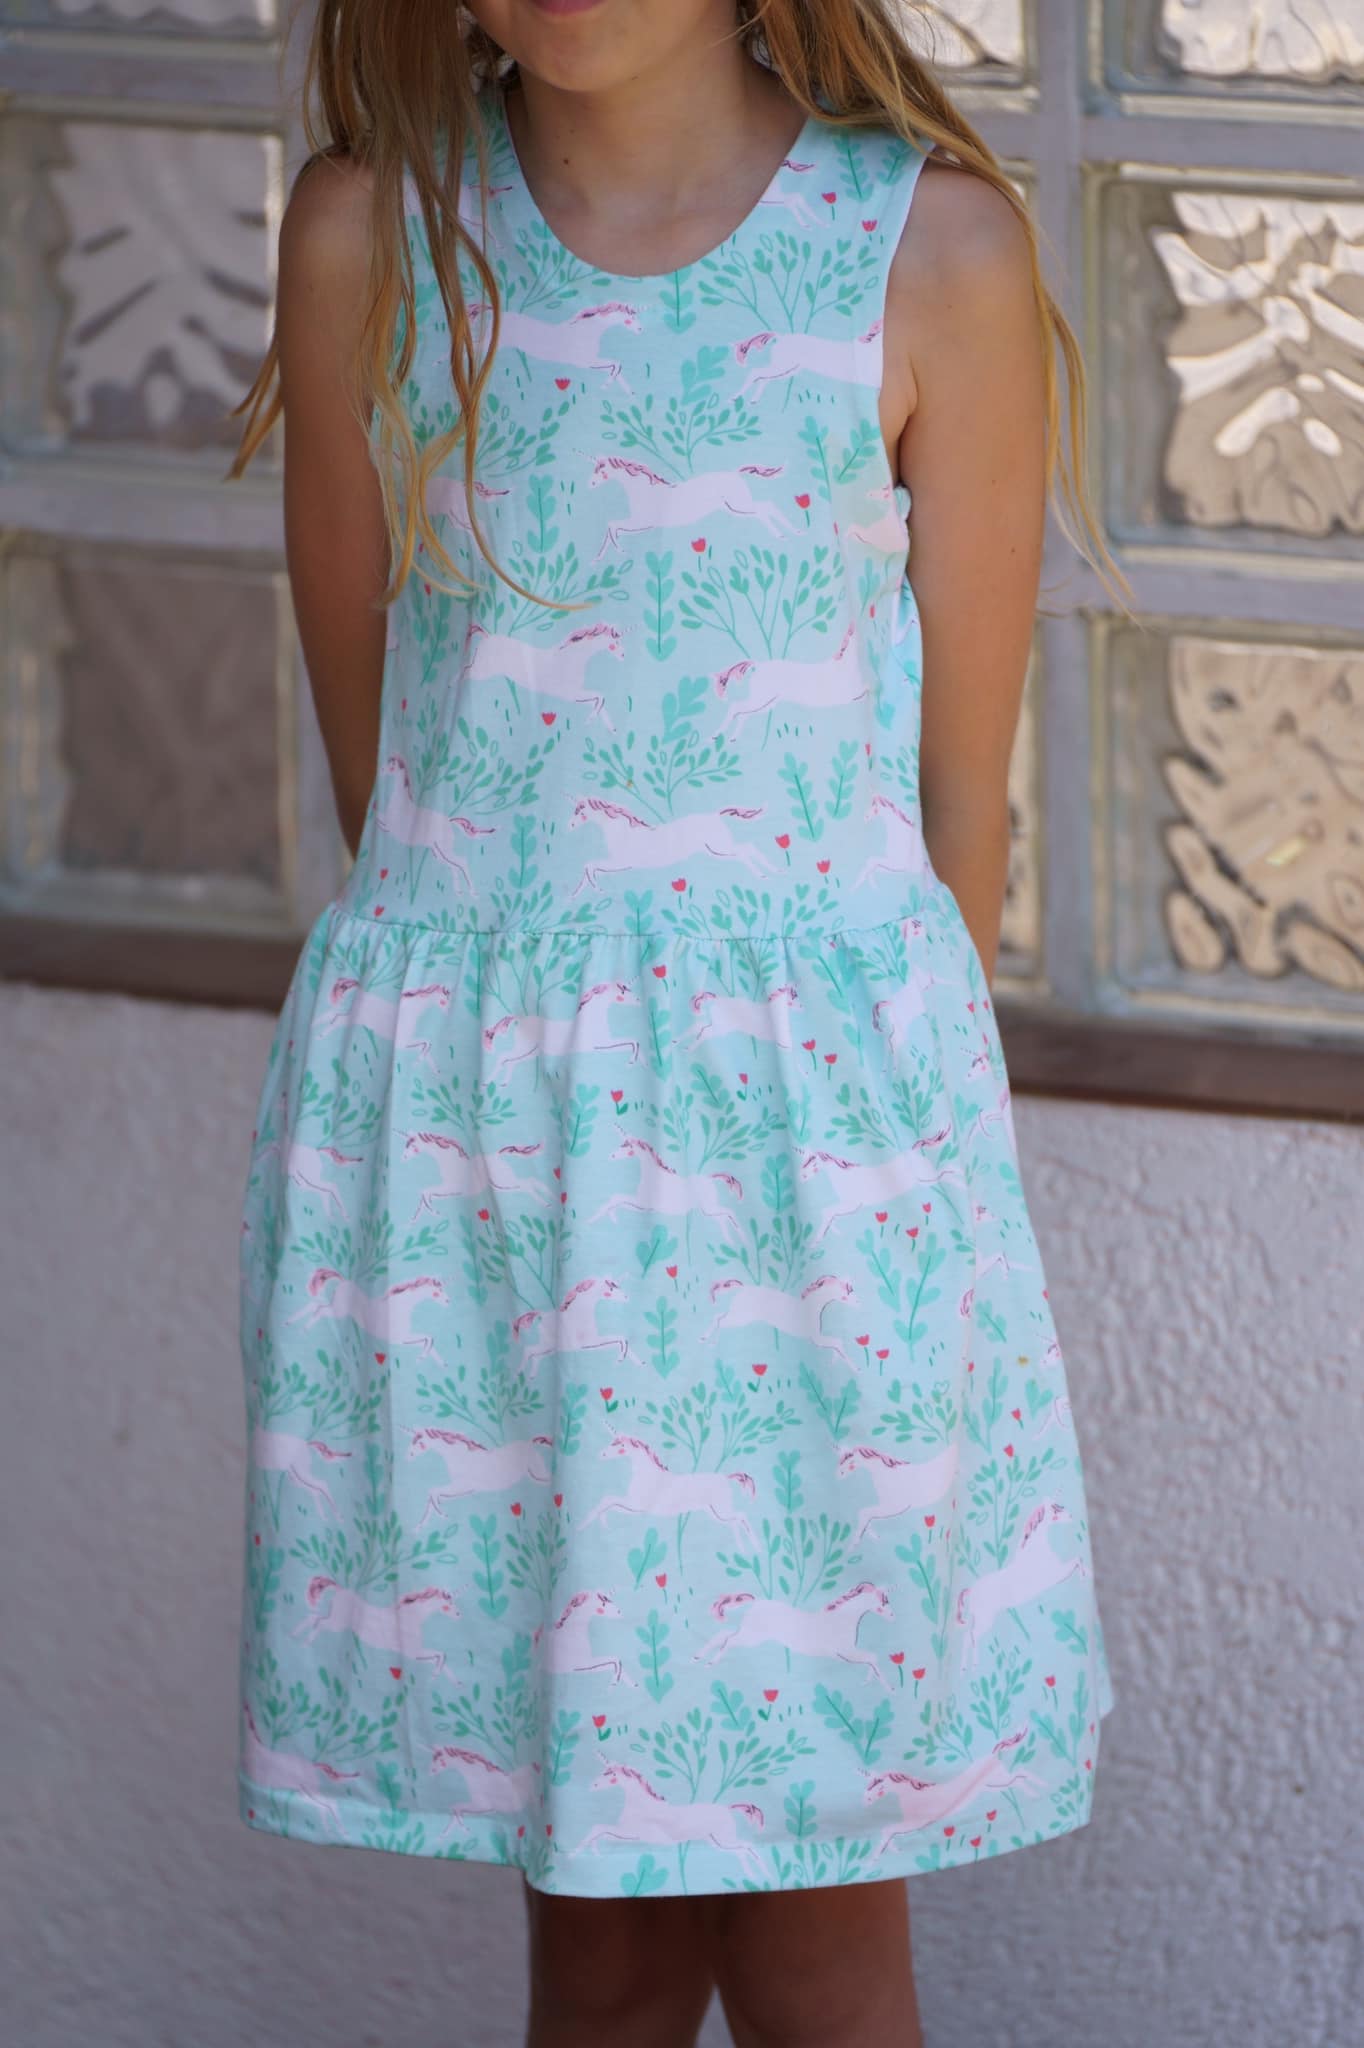 # 249 - Back 2 Basic Summer Dress Sommerkleid Gr. 104 - 164 inkl. A0